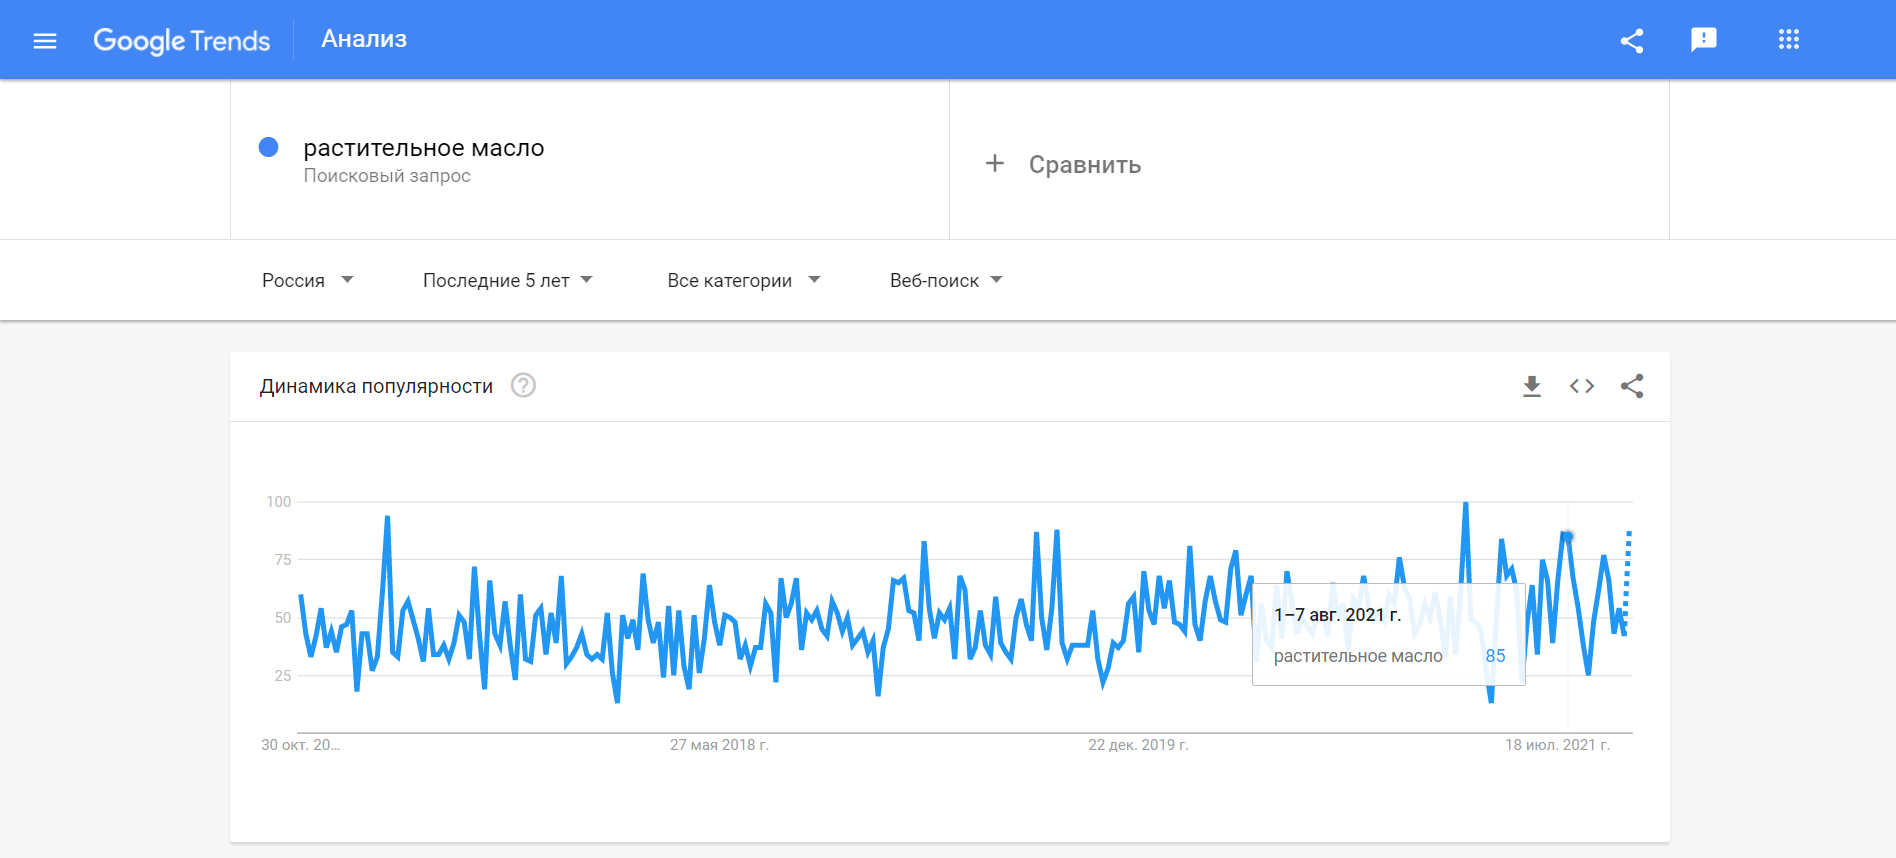 Анализ запроса за пять лет в Google Trends